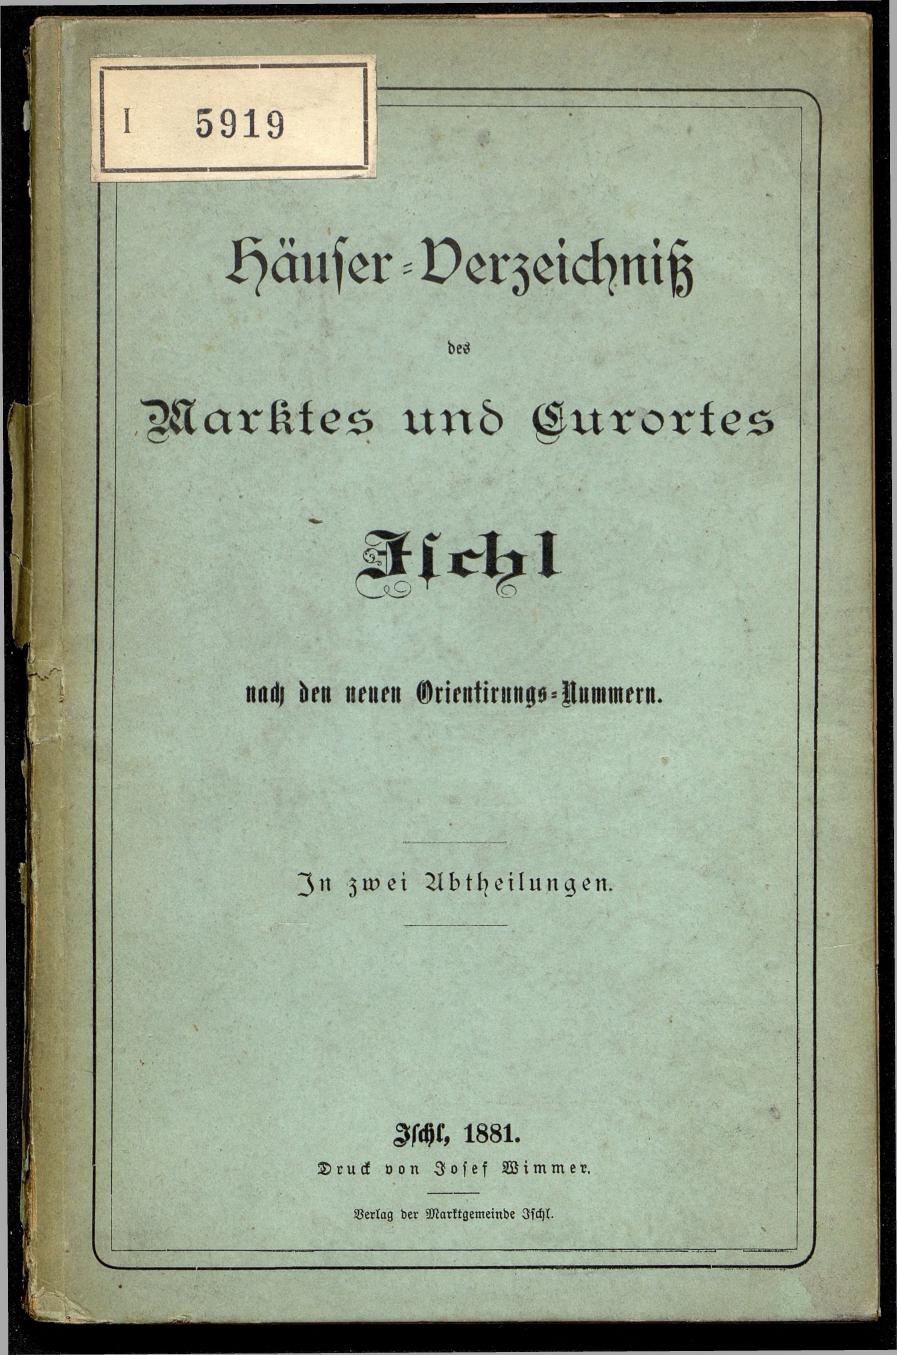 Häuser-Verzeichnis des Marktes und Kurortes Ischl nach den neuen Orientirungsnummern 1881 - Seite 1